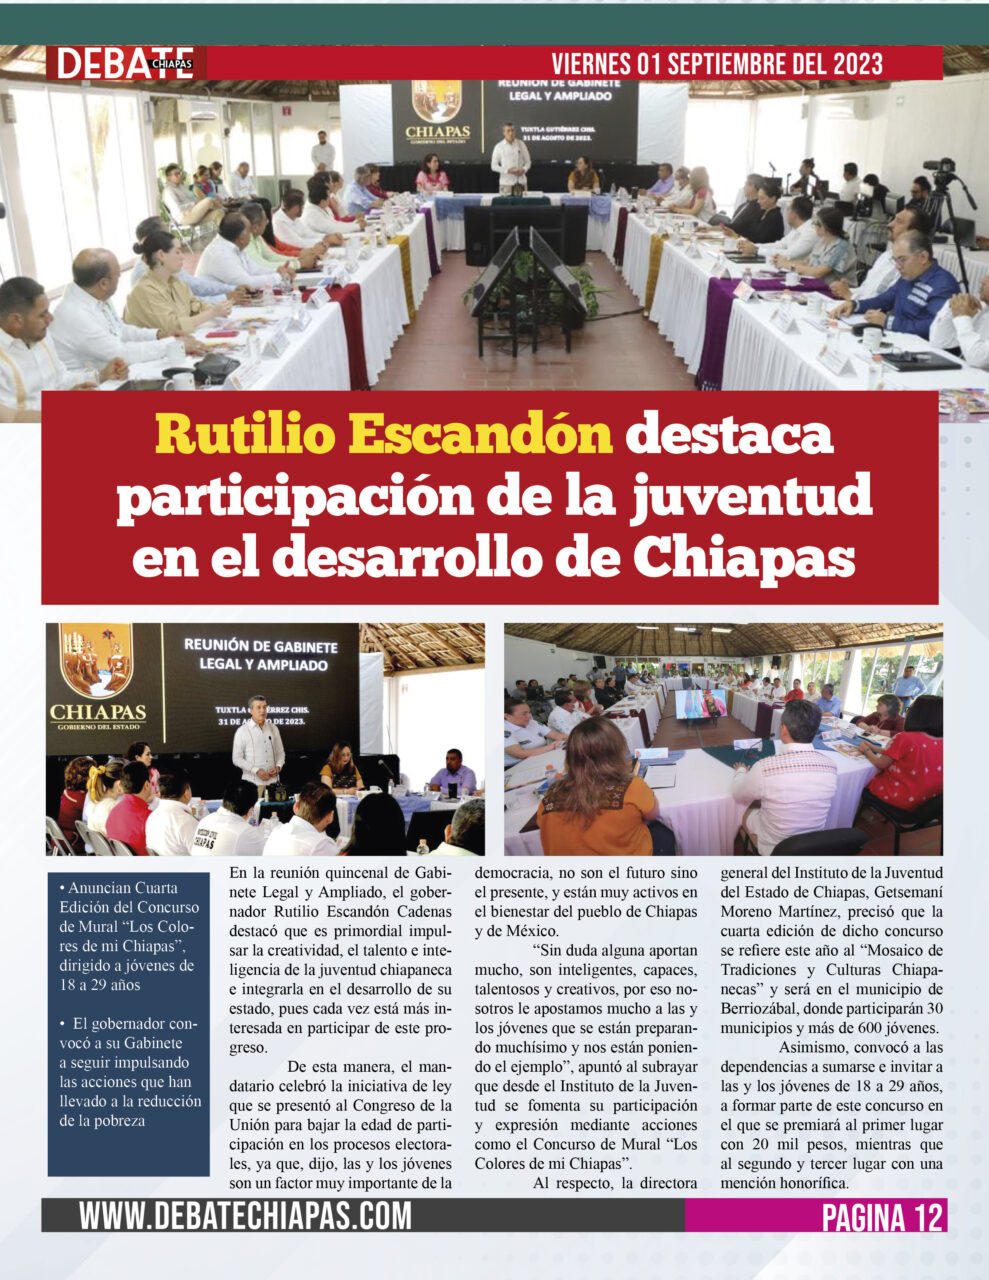 Rutilio Escandón destaca participación de la juventud en el desarrollo de Chiapas